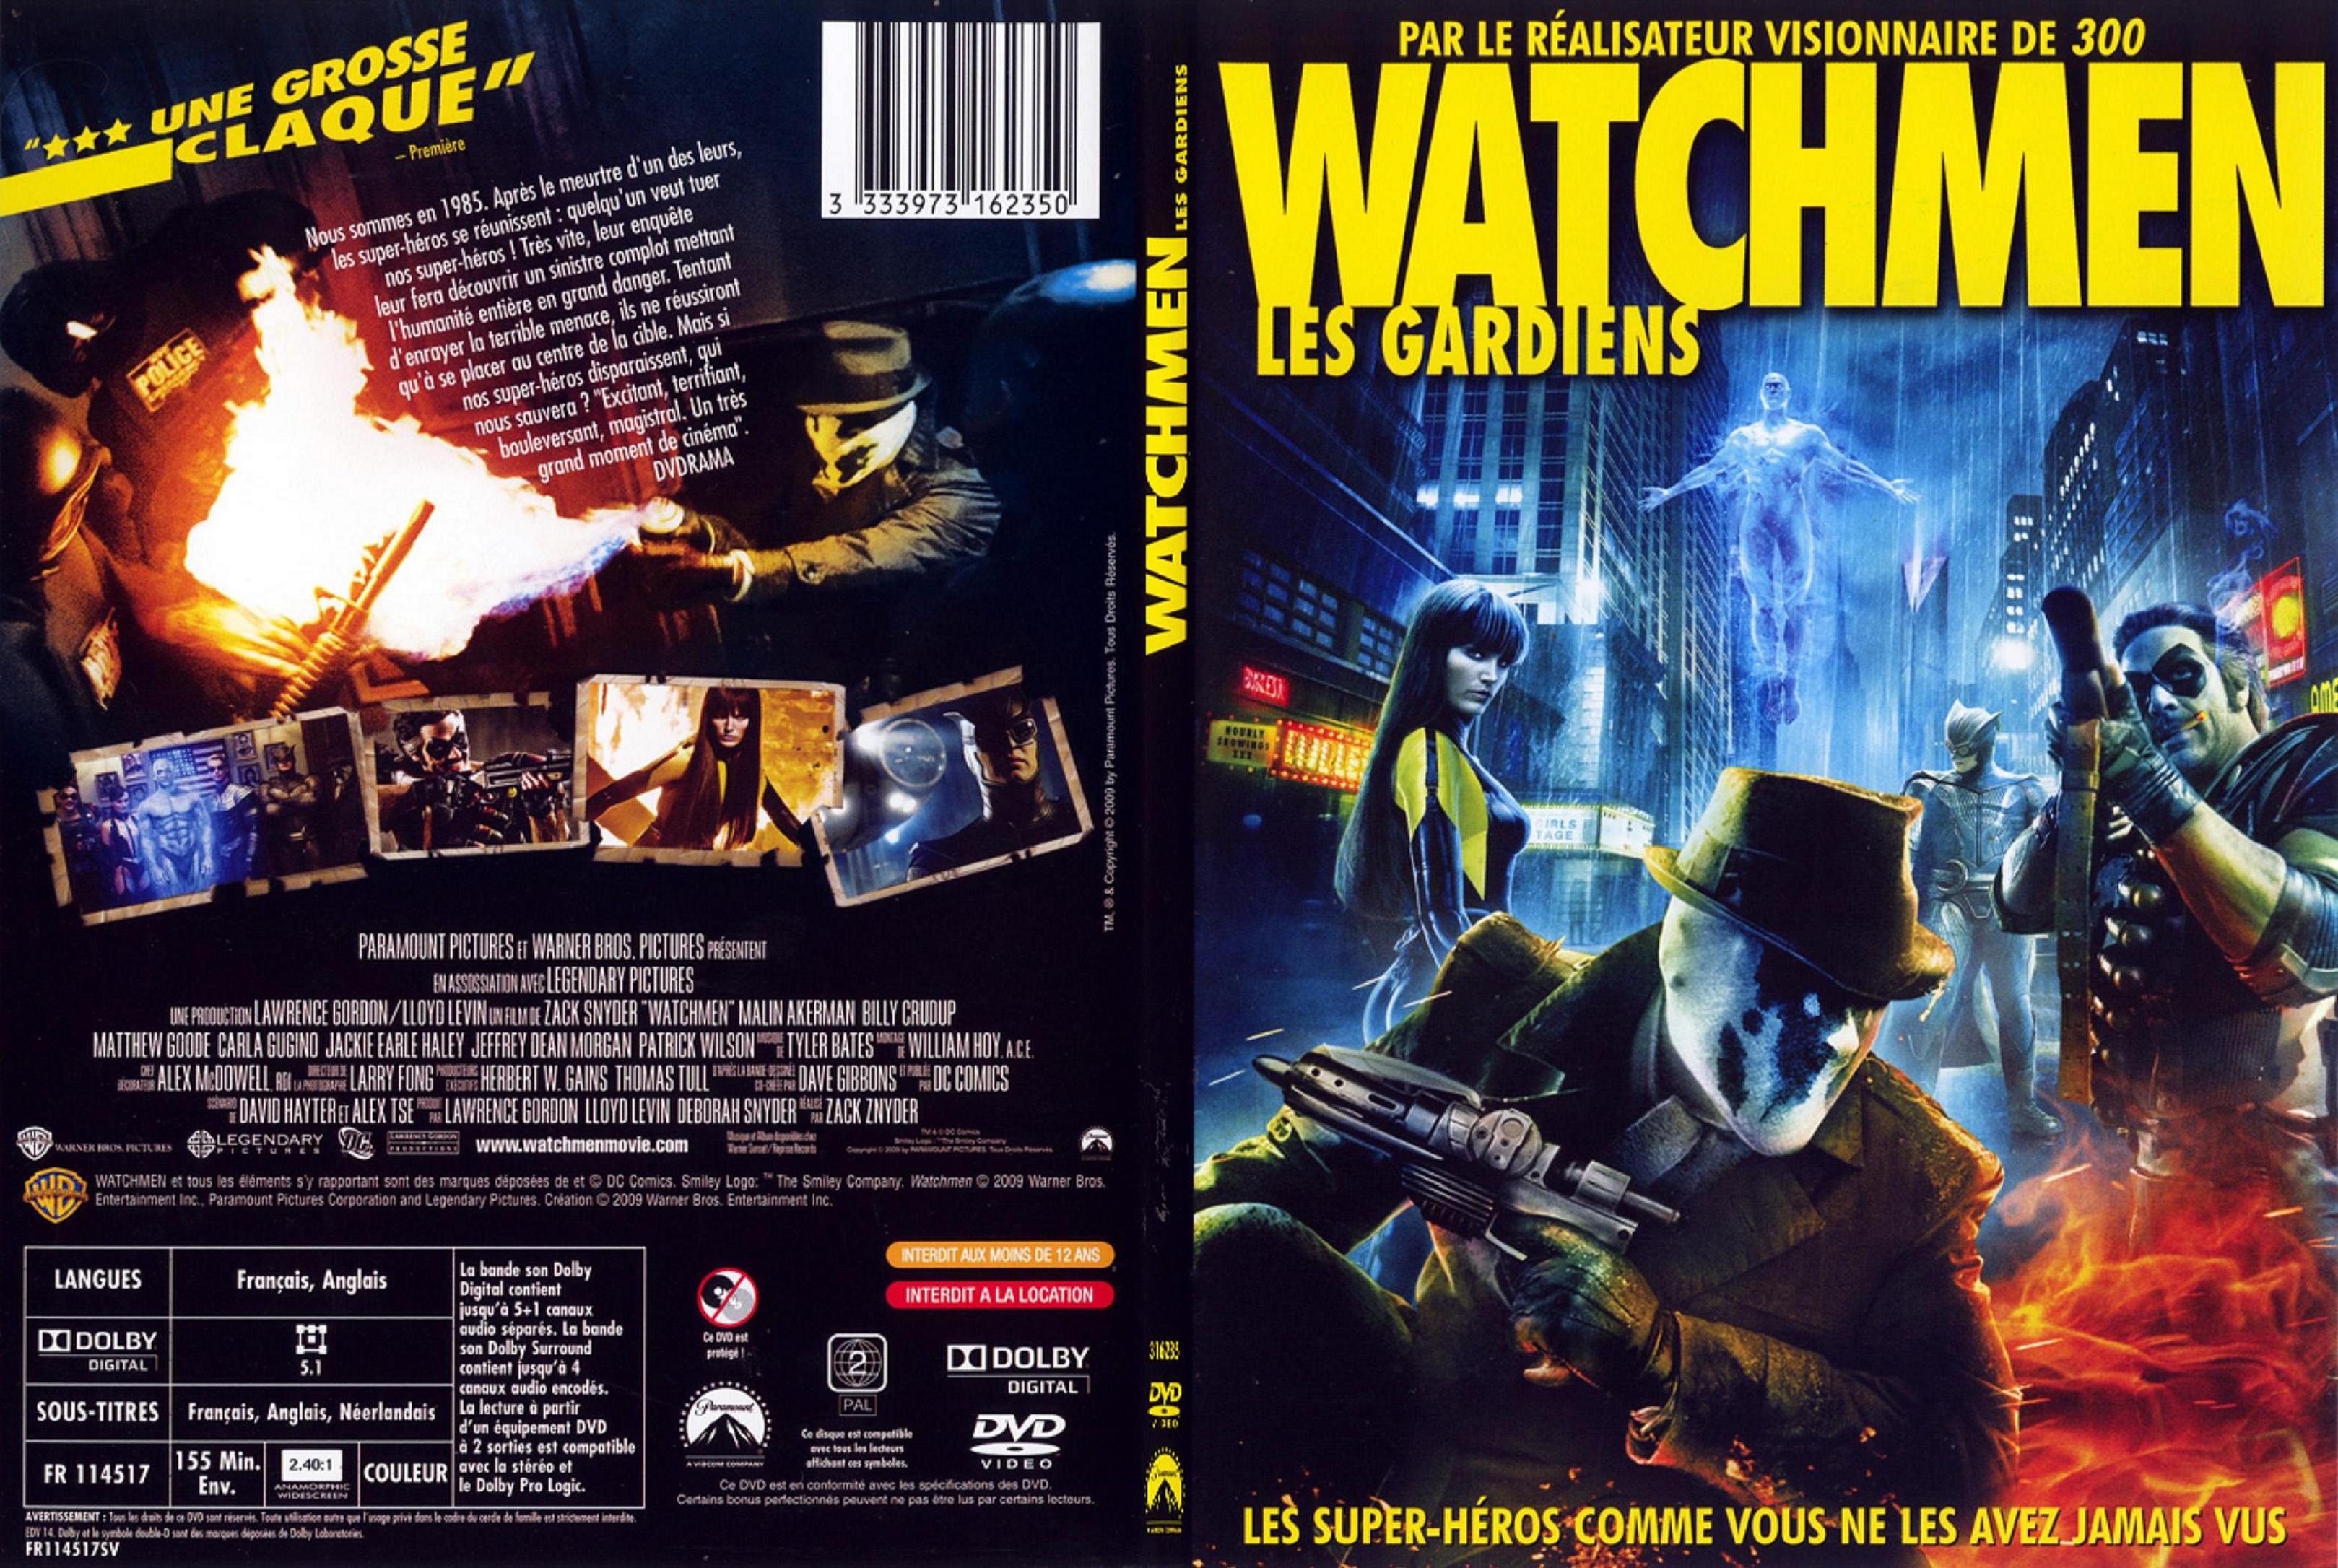 Jaquette DVD Watchmen les gardiens - SLIM